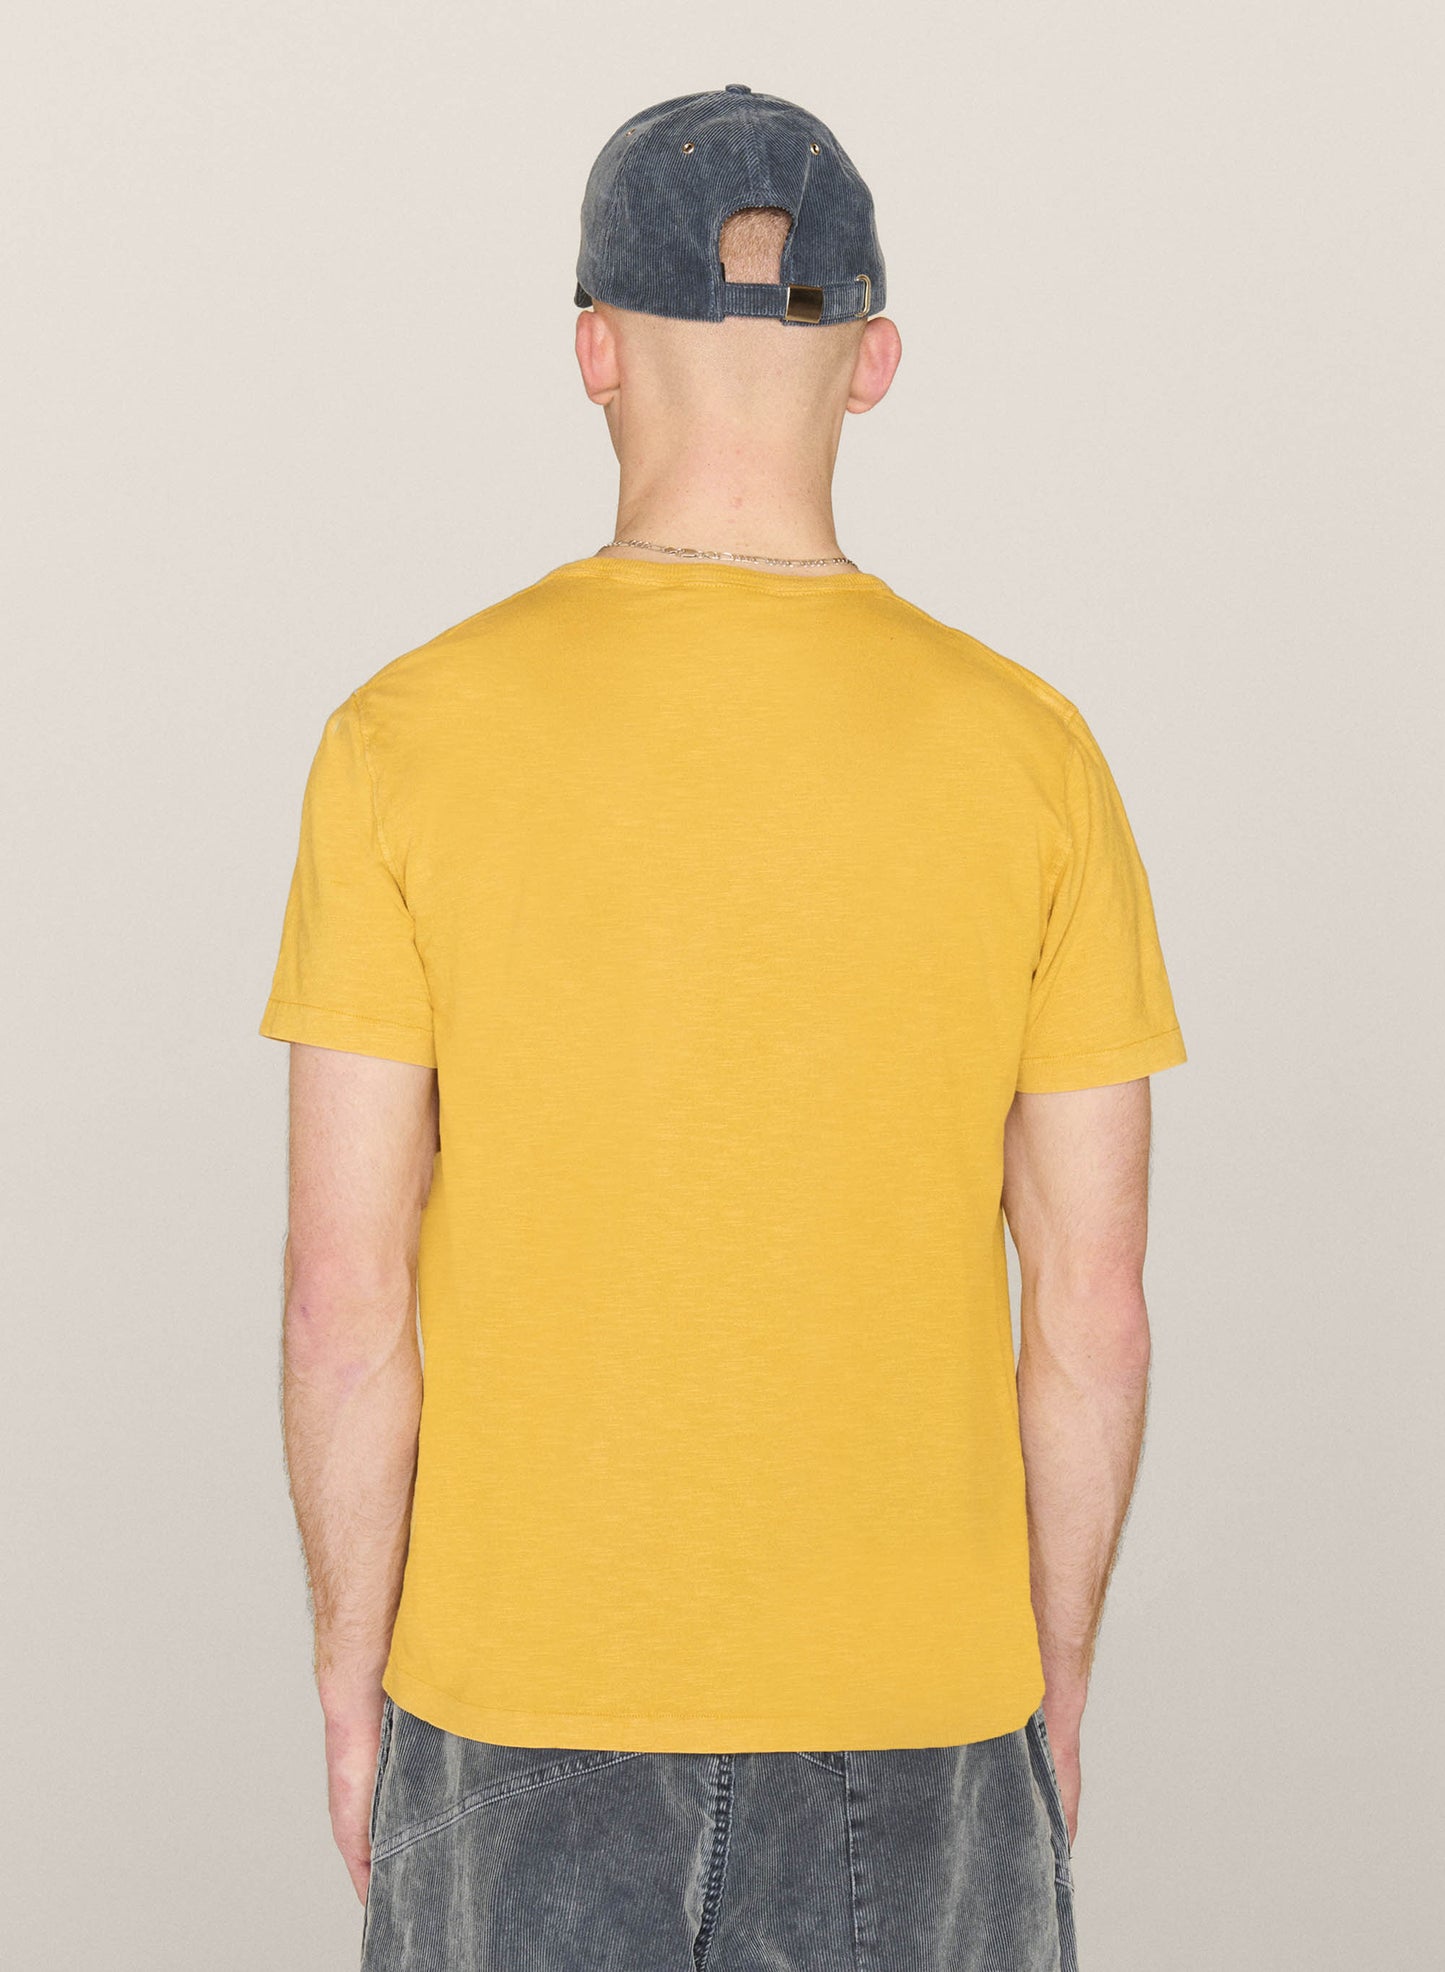 YMC Wild Ones T-Shirt - Yellow